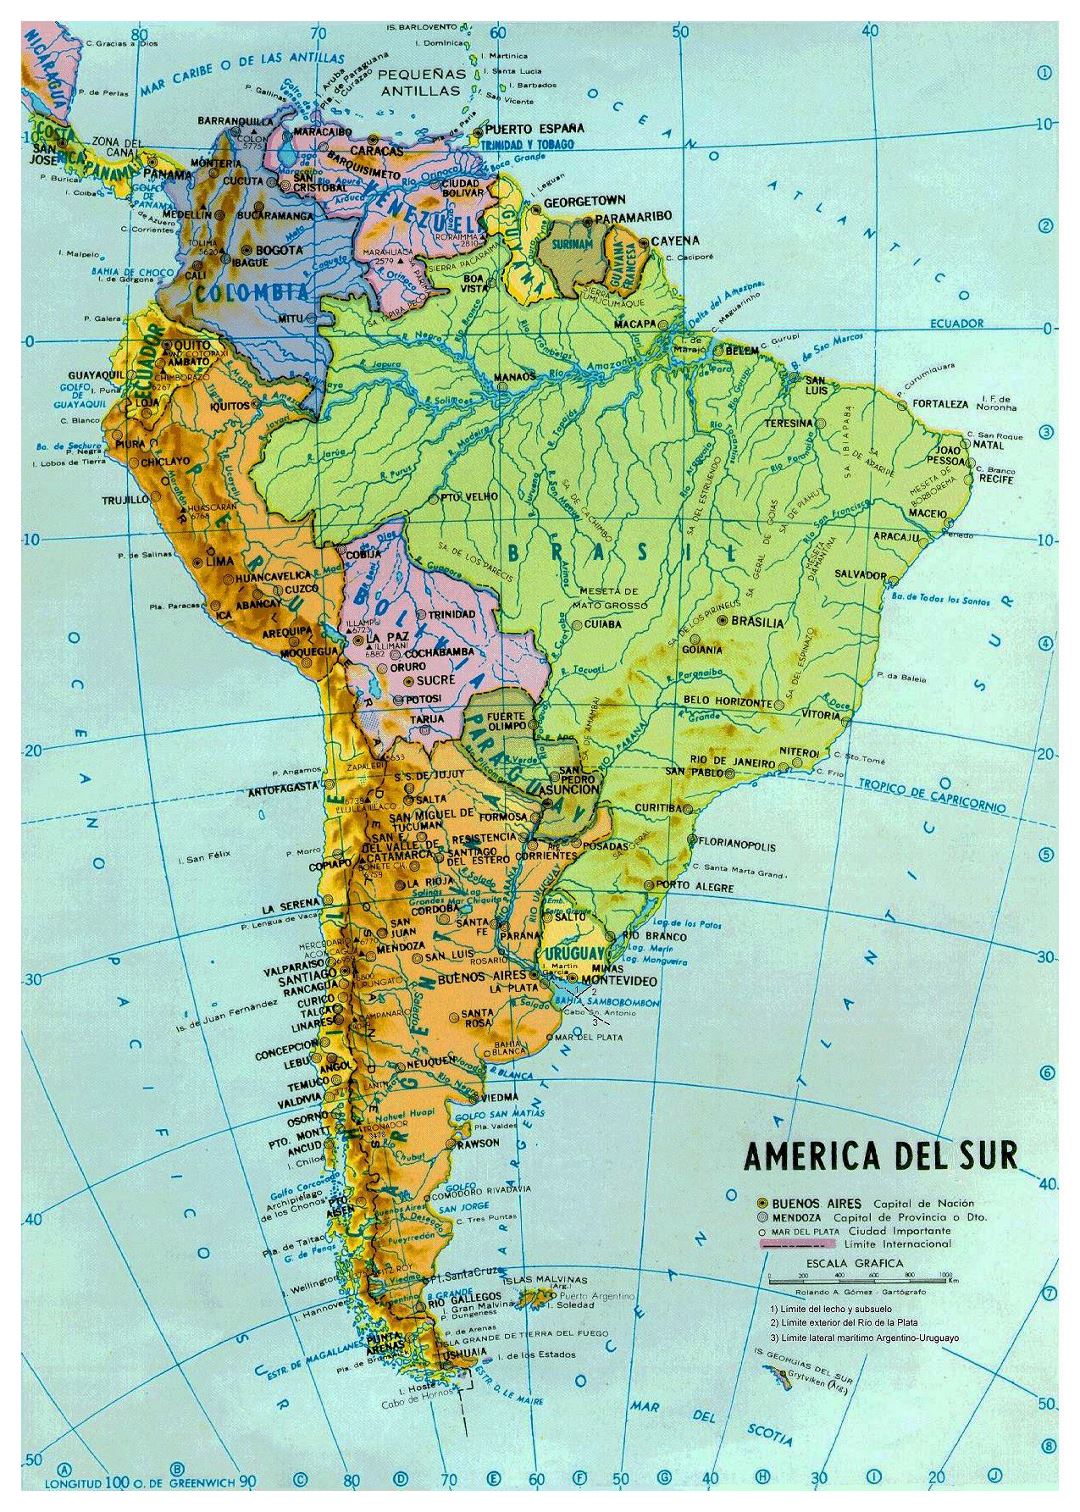 Mapa grande político y hidrográfico de América del Sur con las principales ciudades y capitales